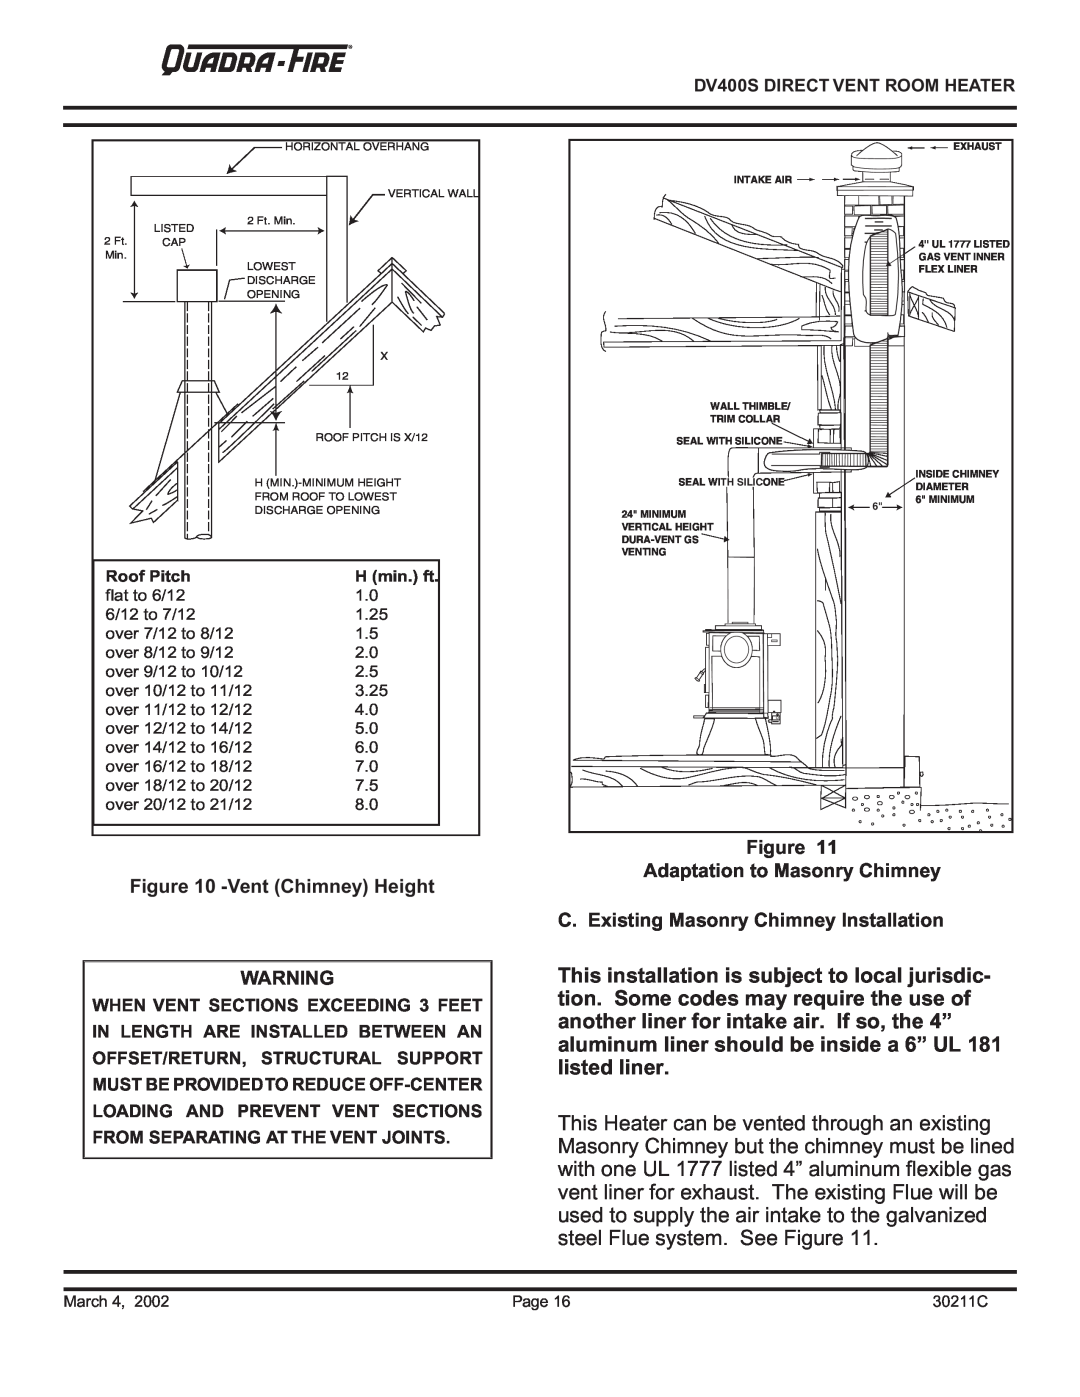 Quadra-Fire DV400S VentChimney Height, Figure Adaptation to Masonry Chimney, C. Existing Masonry Chimney Installation 